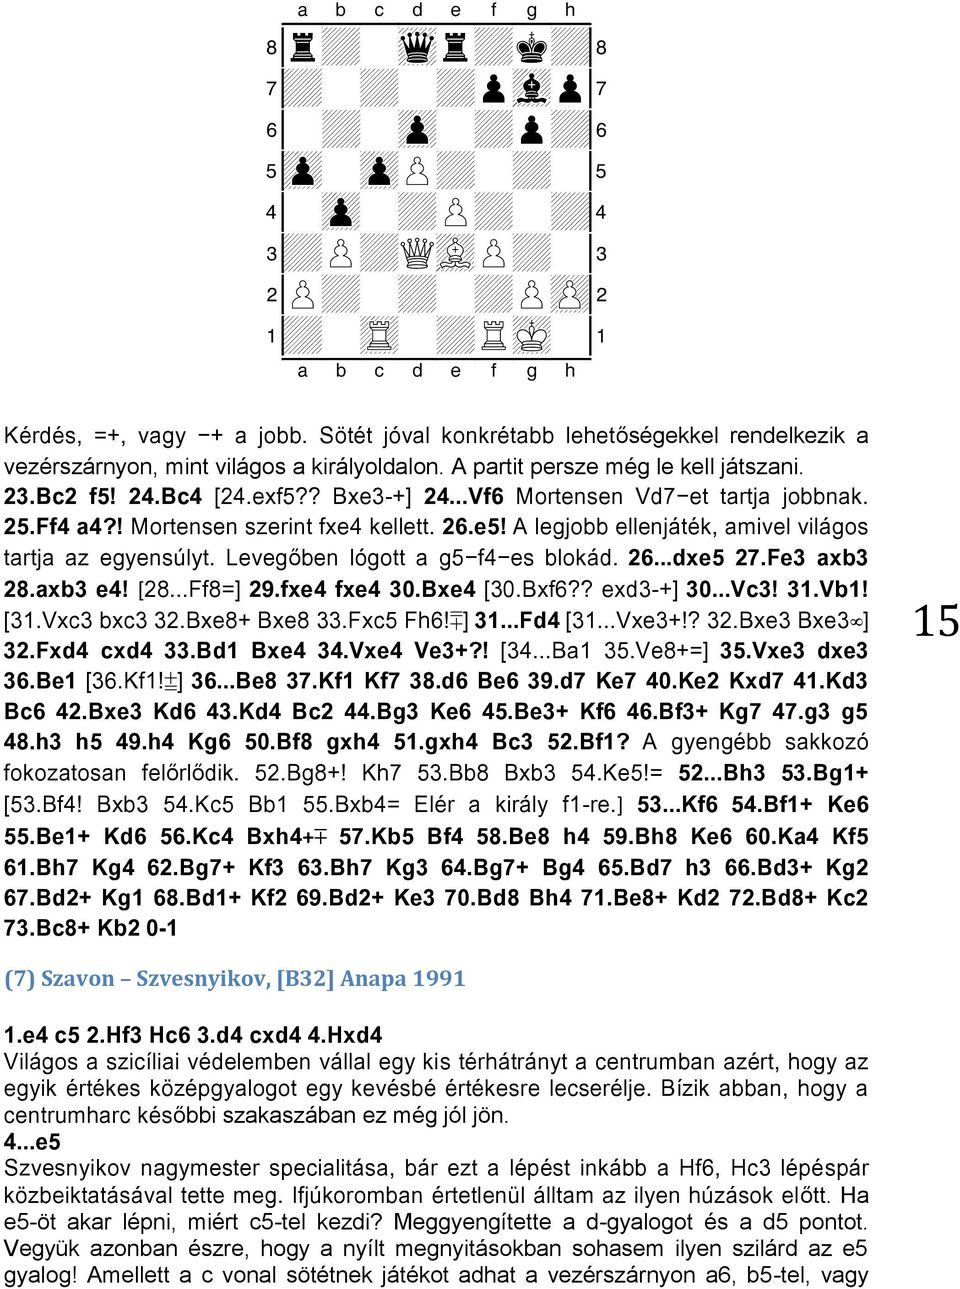 ..Vf6 Mortensen Vd7-et tartja jobbnak. 25.Ff4 a4?! Mortensen szerint fxe4 kellett. 26.e5! A legjobb ellenjáték, amivel világos tartja az egyensúlyt. Levegőben lógott a g5-f4-es blokád. 26...dxe5 27.